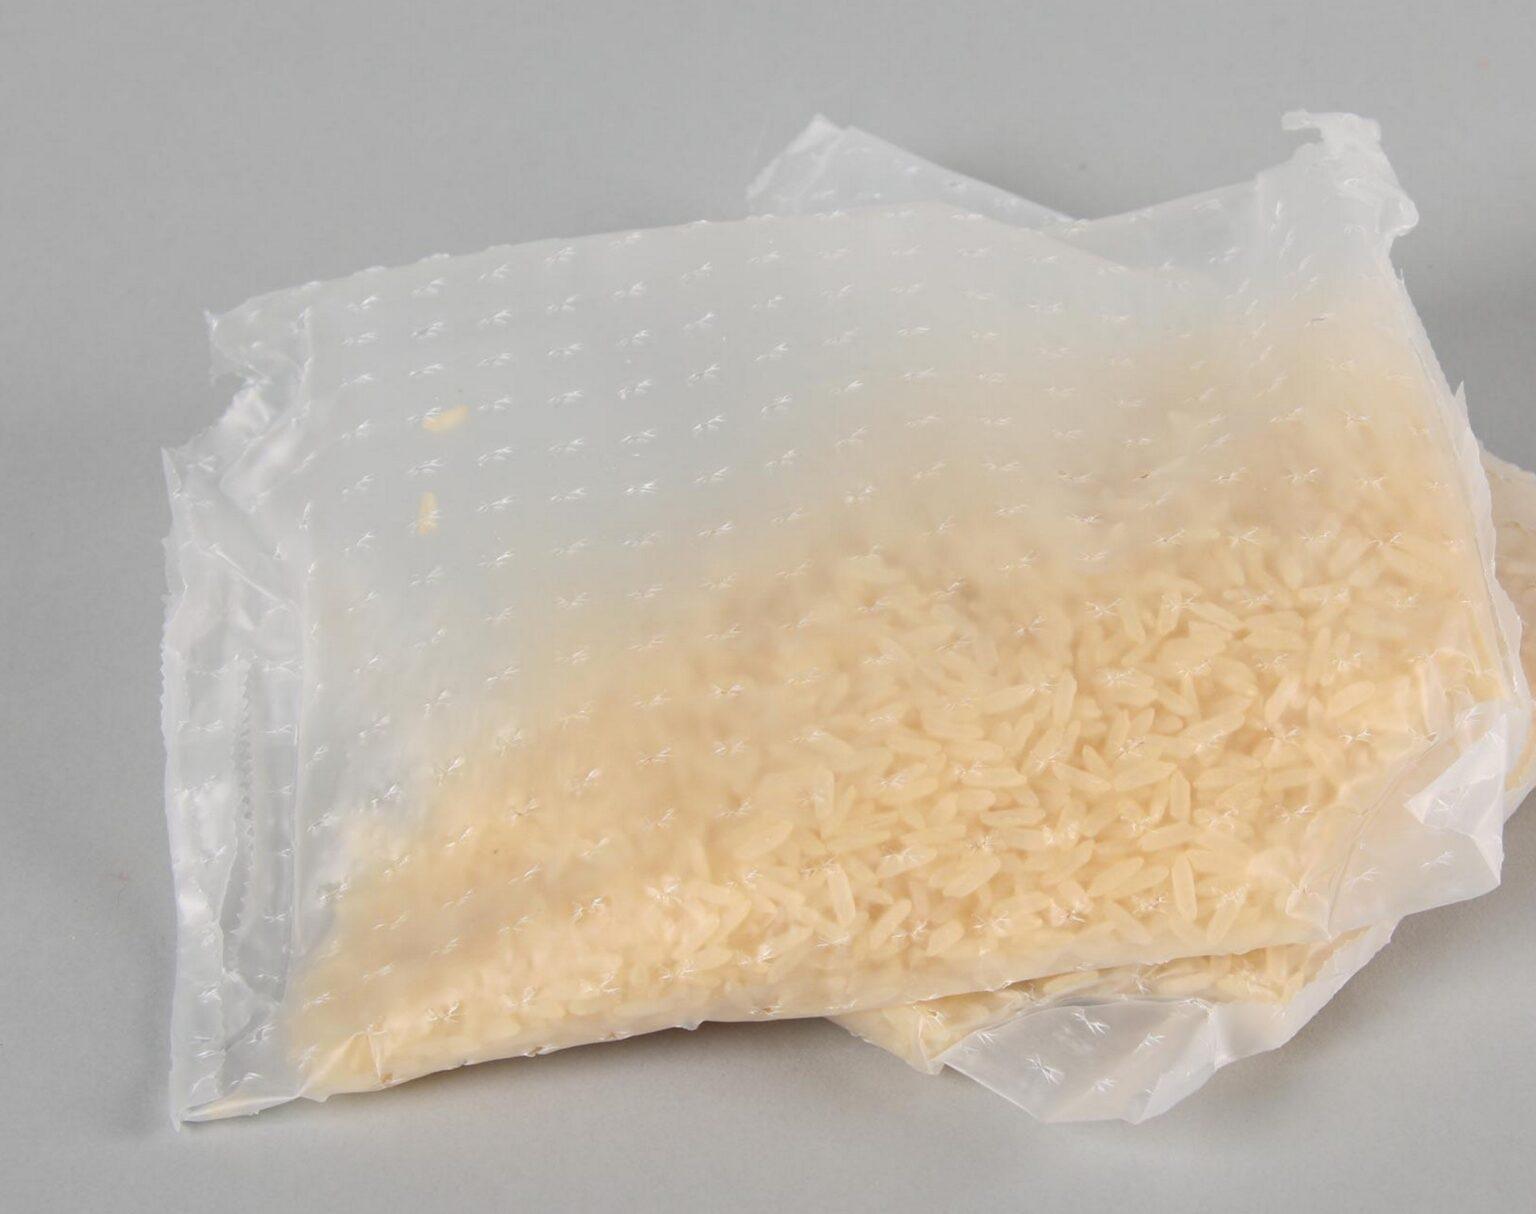 Pokud si kupujete rýži v sáčku, měli byste vědět, co to obsahuje a dělá s vaším tělem